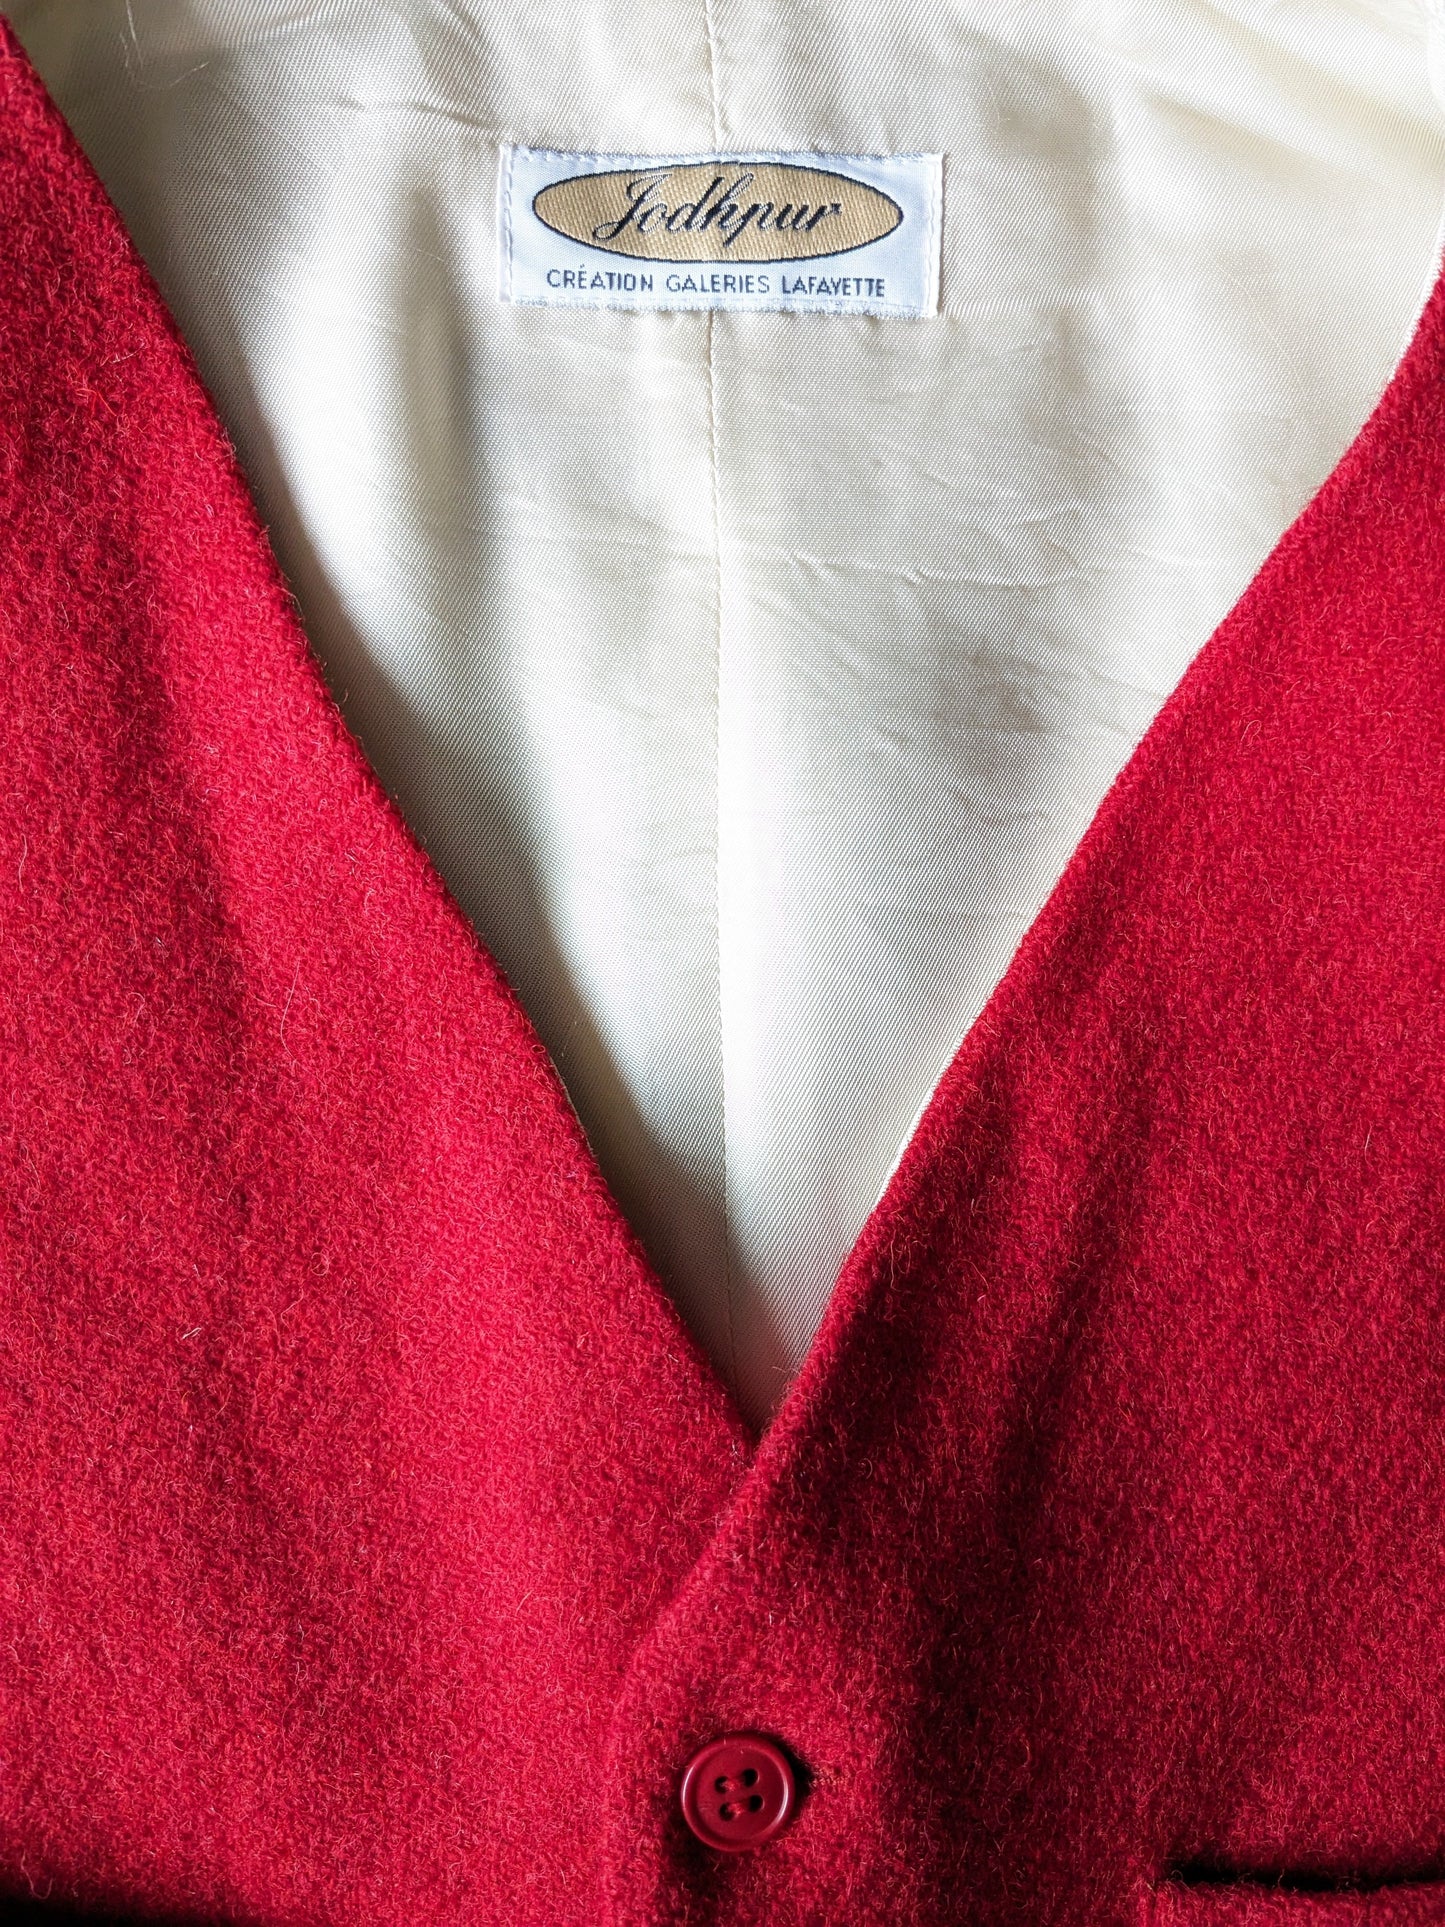 Gilet de laine Jodhpur vintage. Rouge coloré. Taille M.